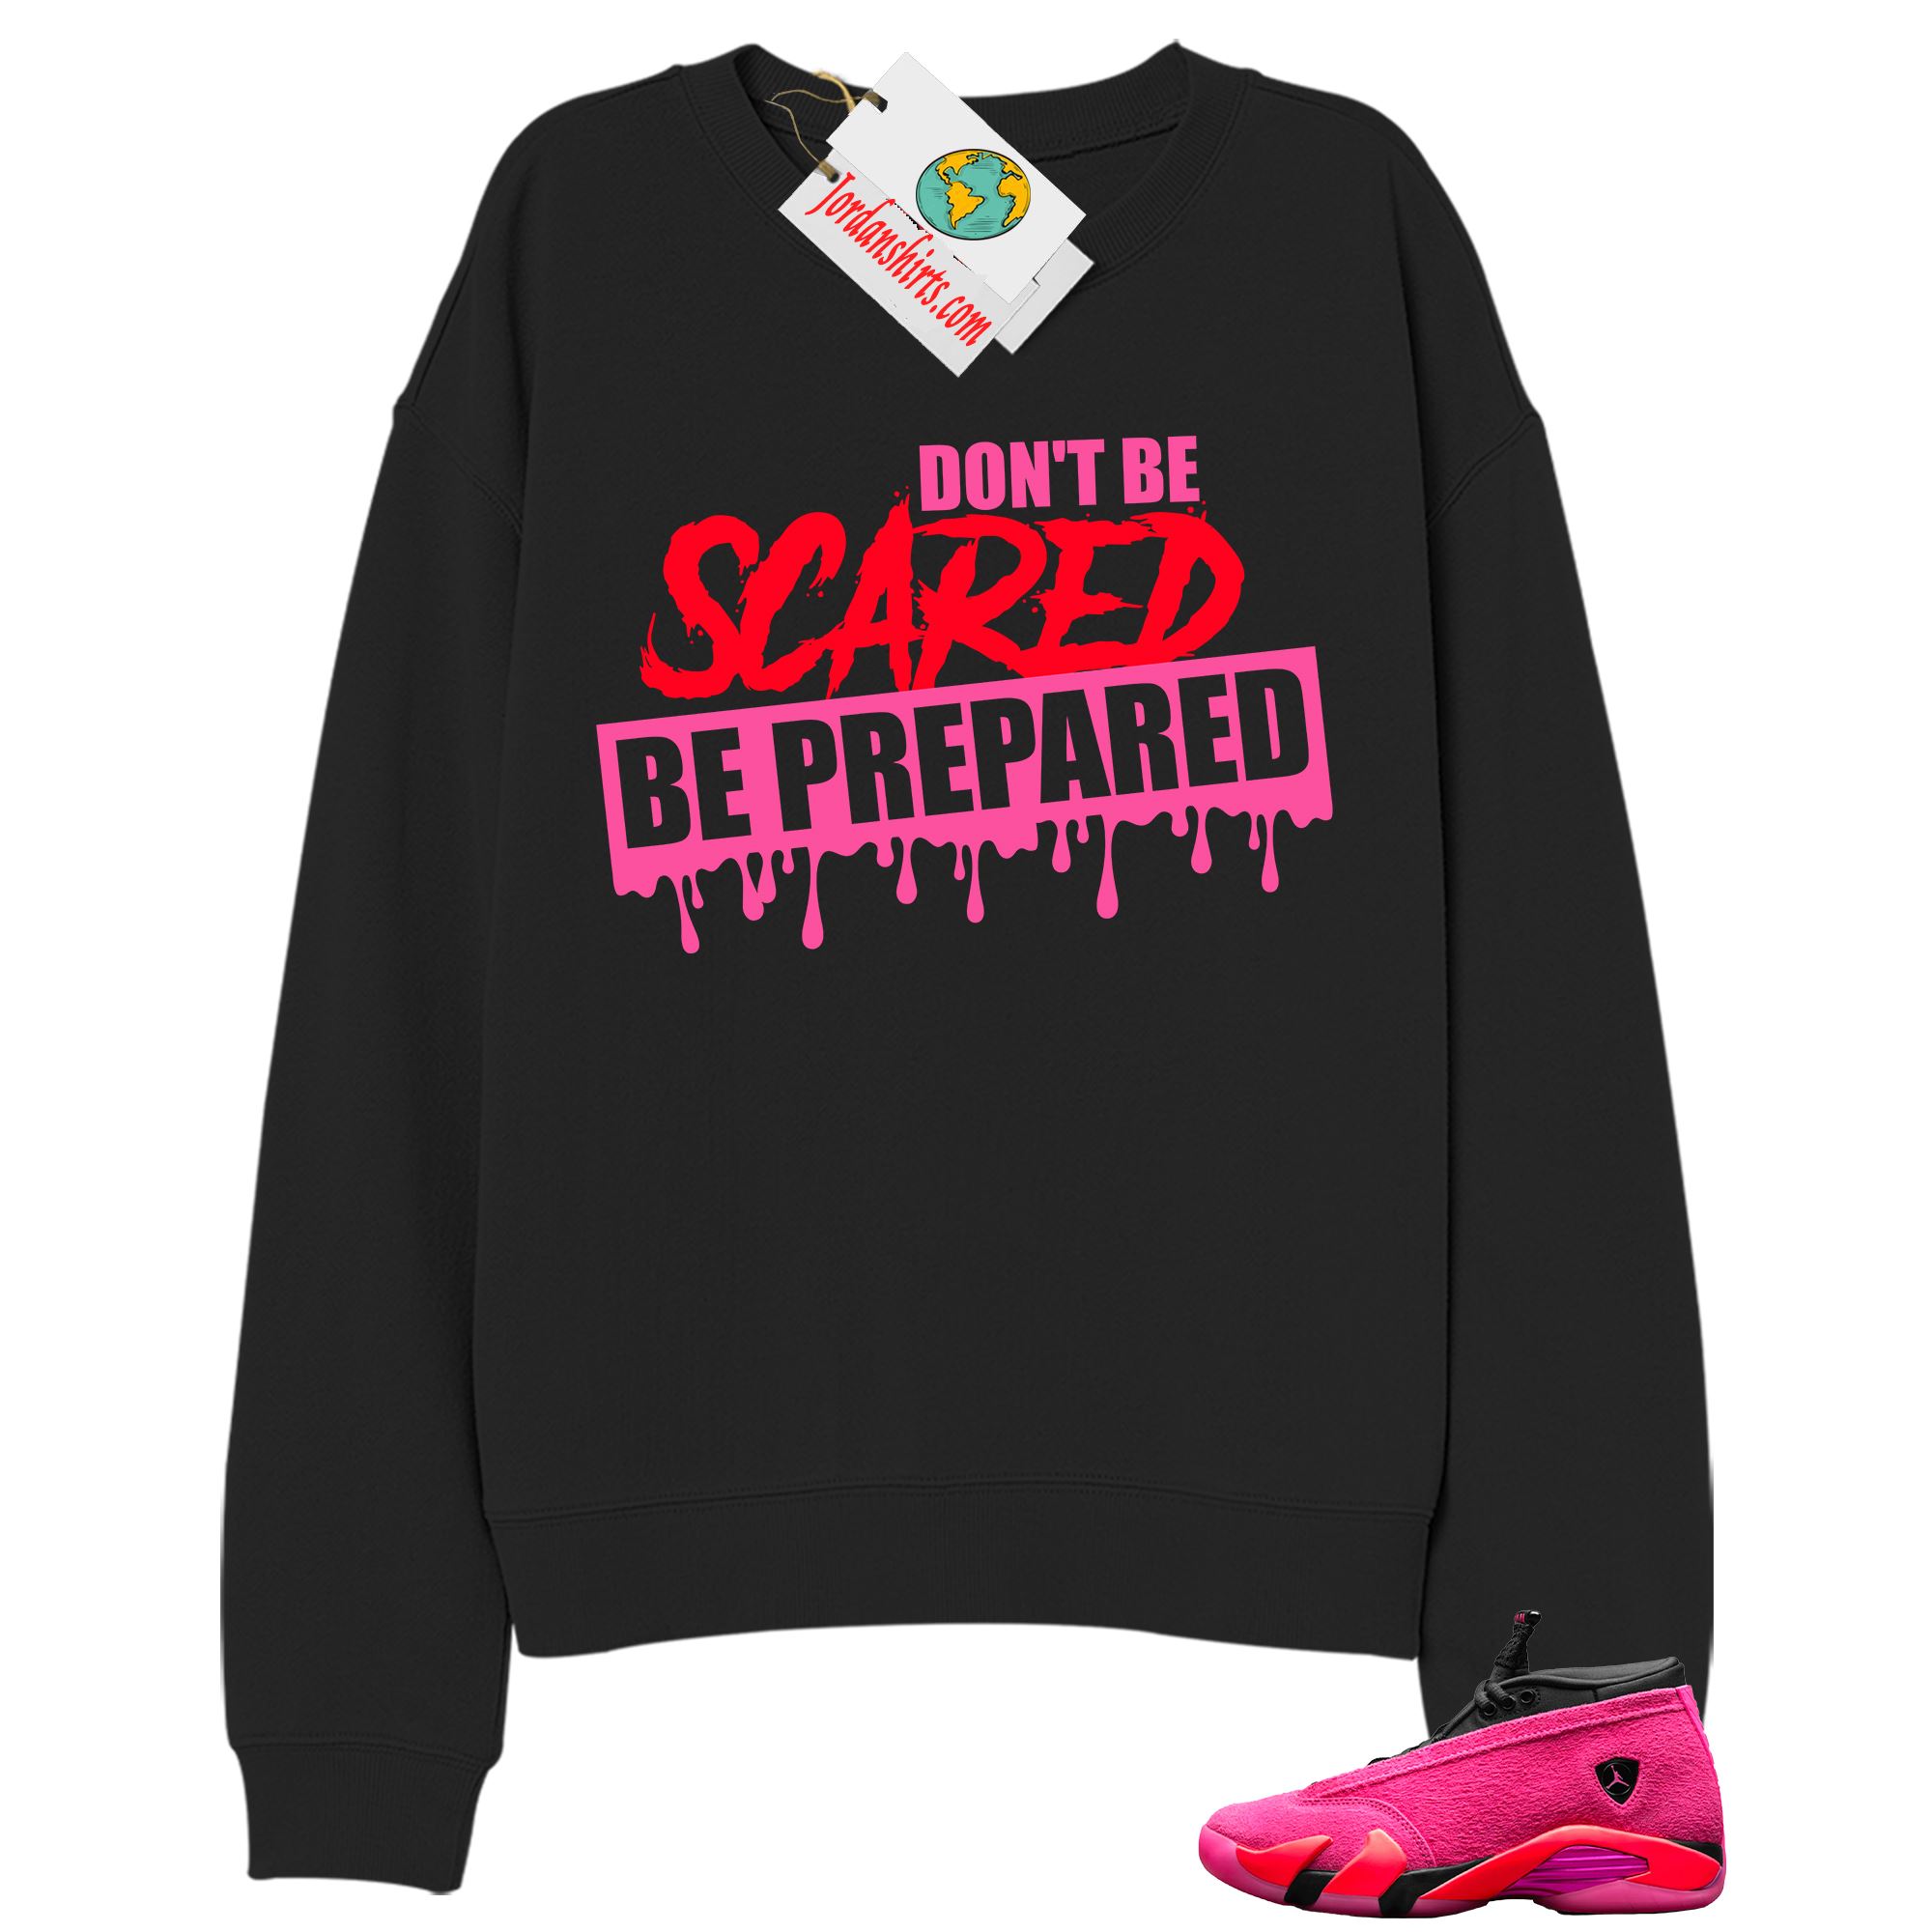 Jordan 14 Sweatshirt, Dont Be Scared Be Prepared Black Sweatshirt Air Jordan 14 Wmns Shocking Pink 14s Plus Size Up To 5xl